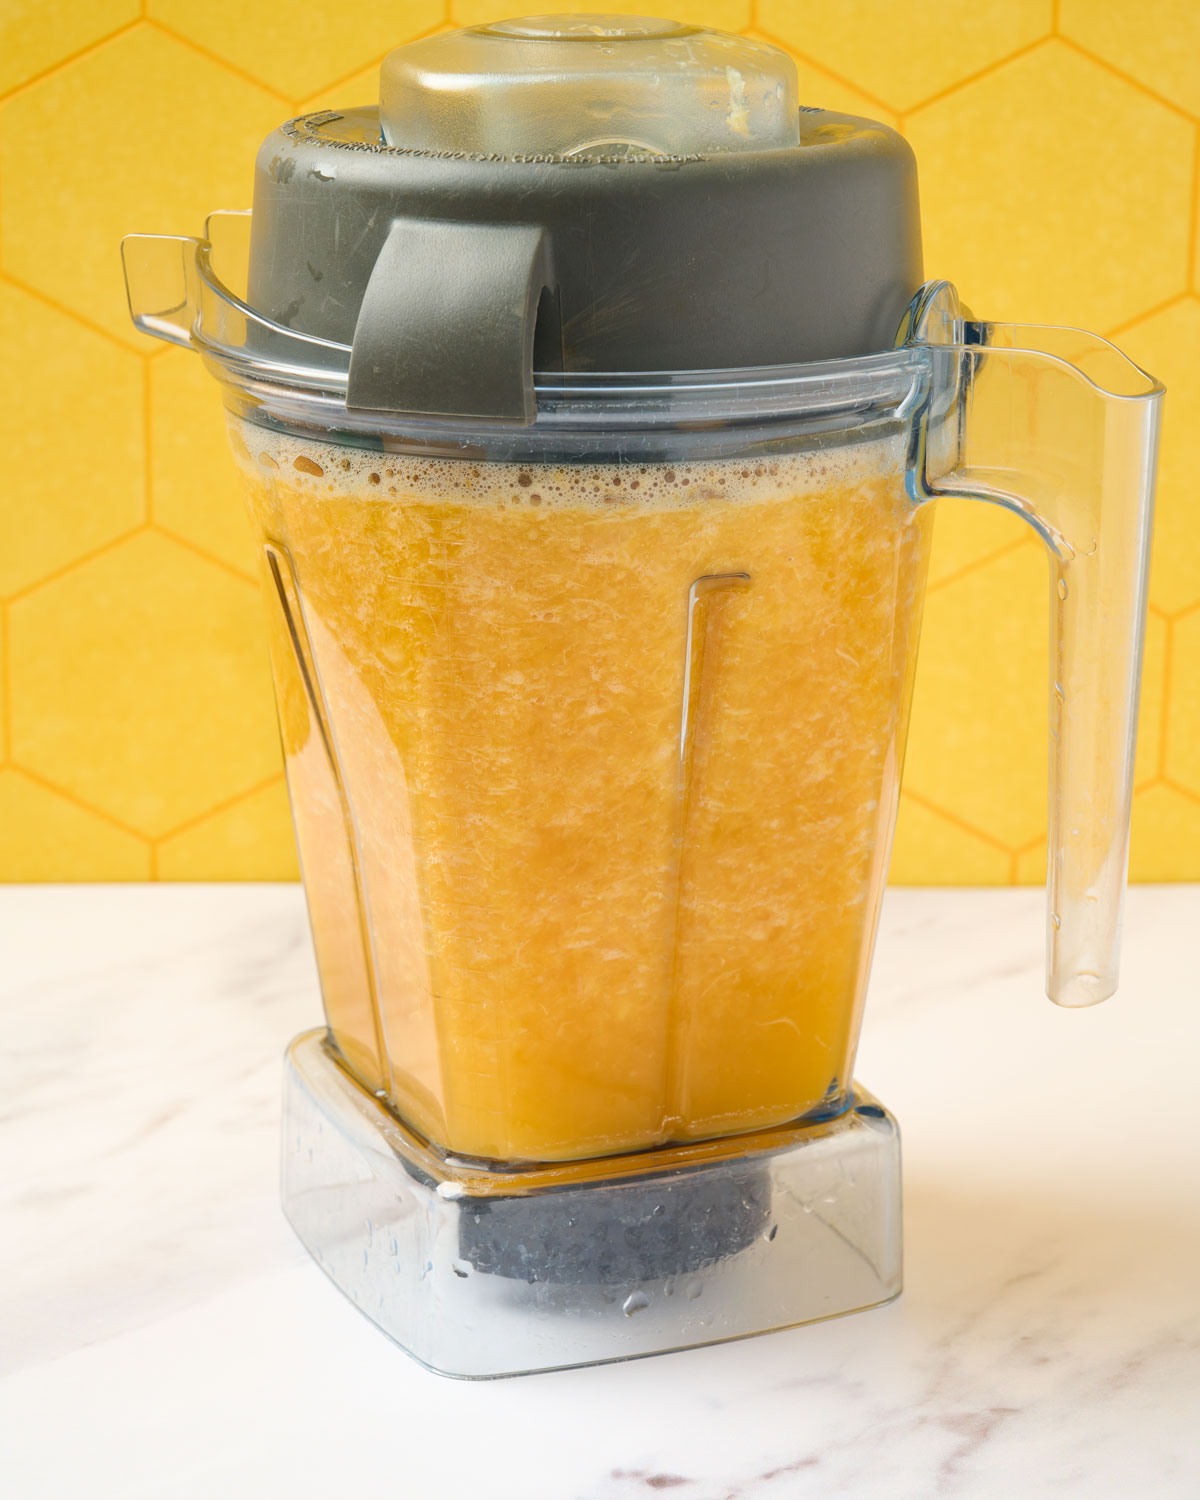 Mandarin juice blended in the blender prior to straining.